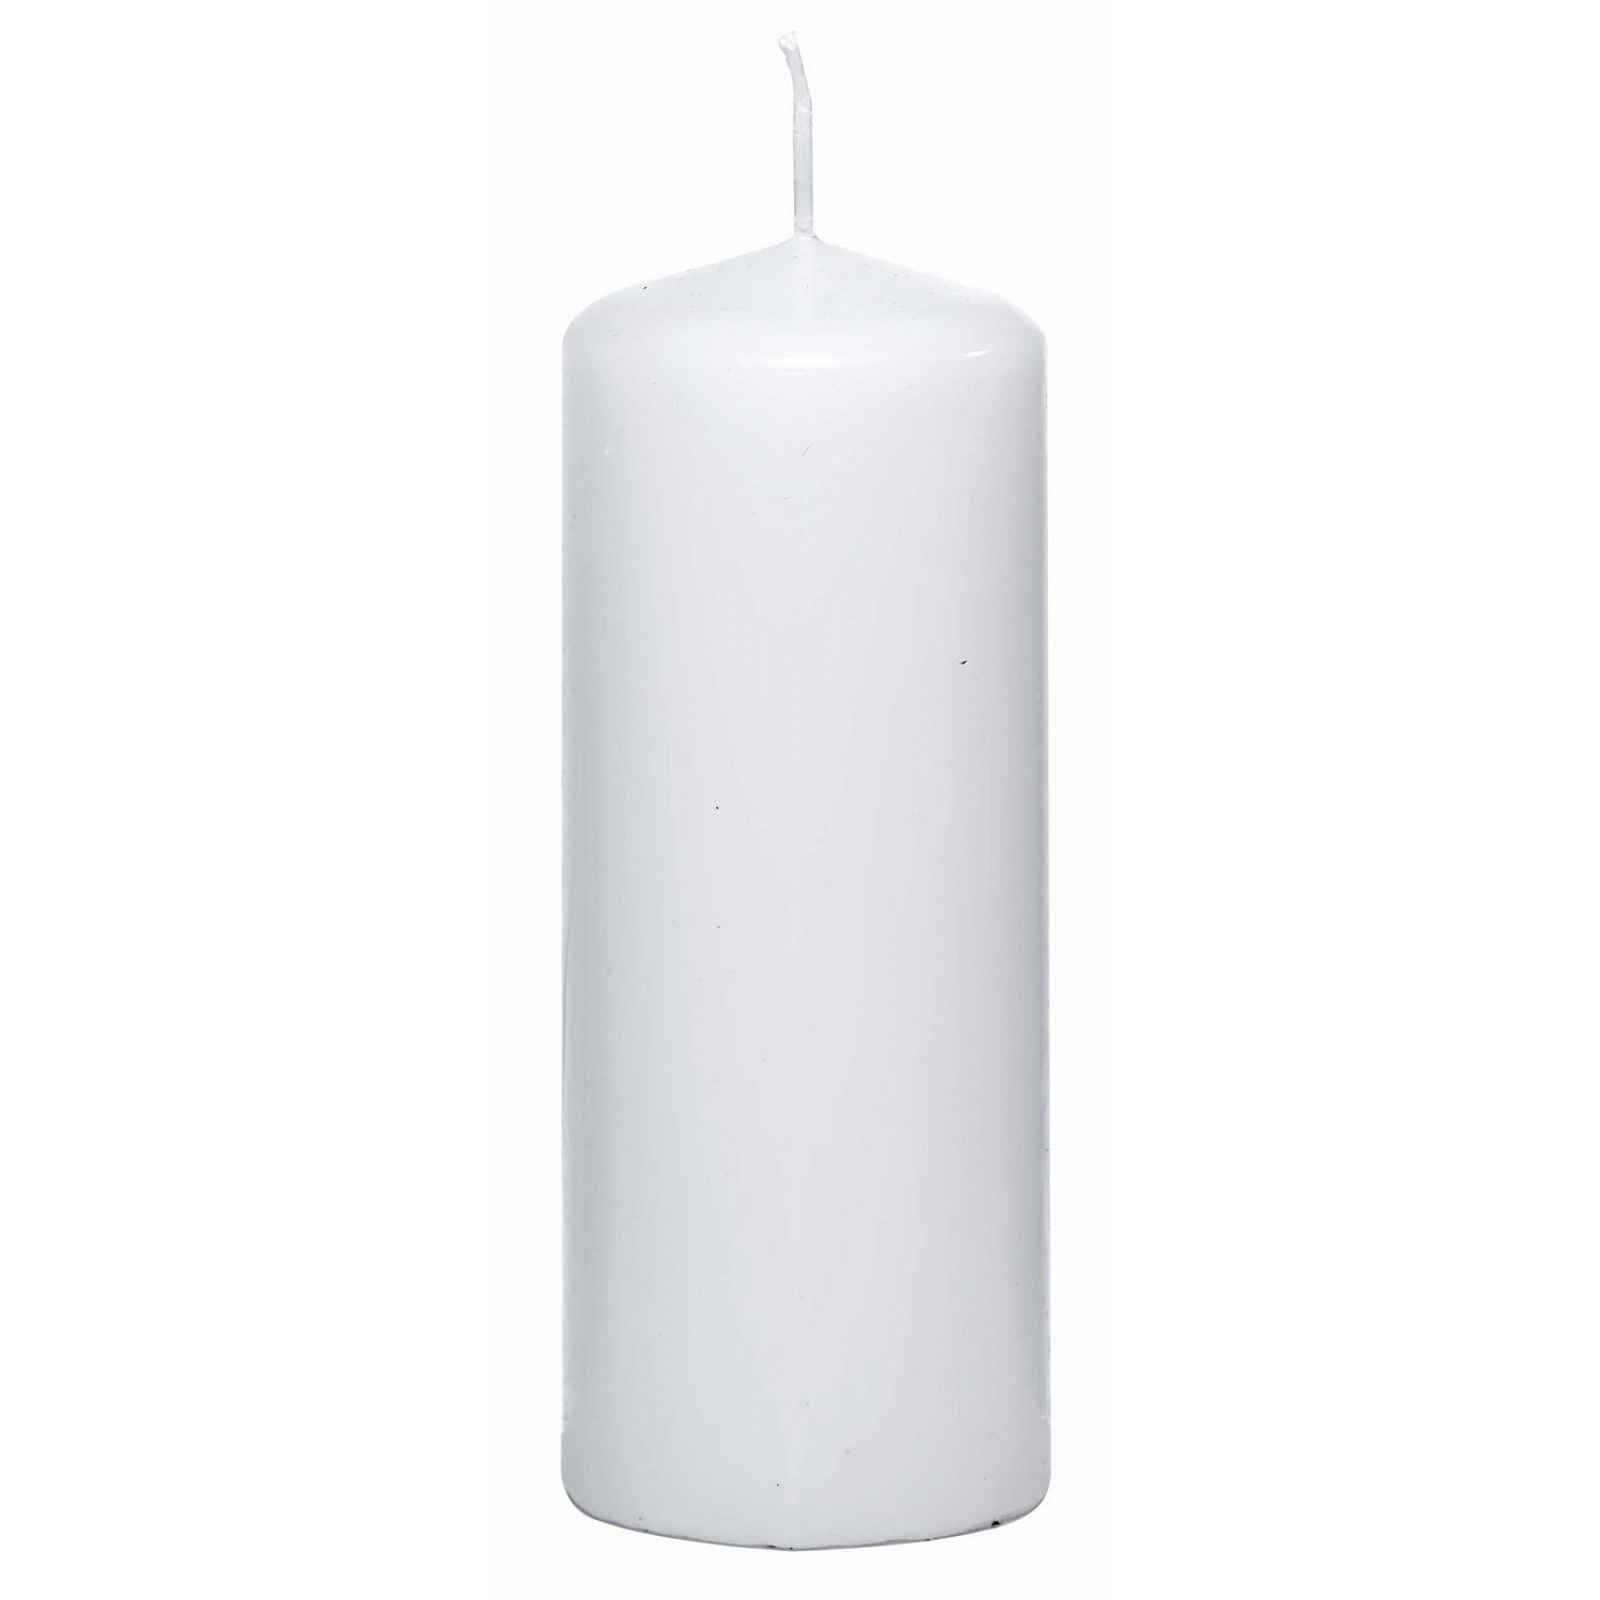 Válcová svíčka bílá, 15 cm